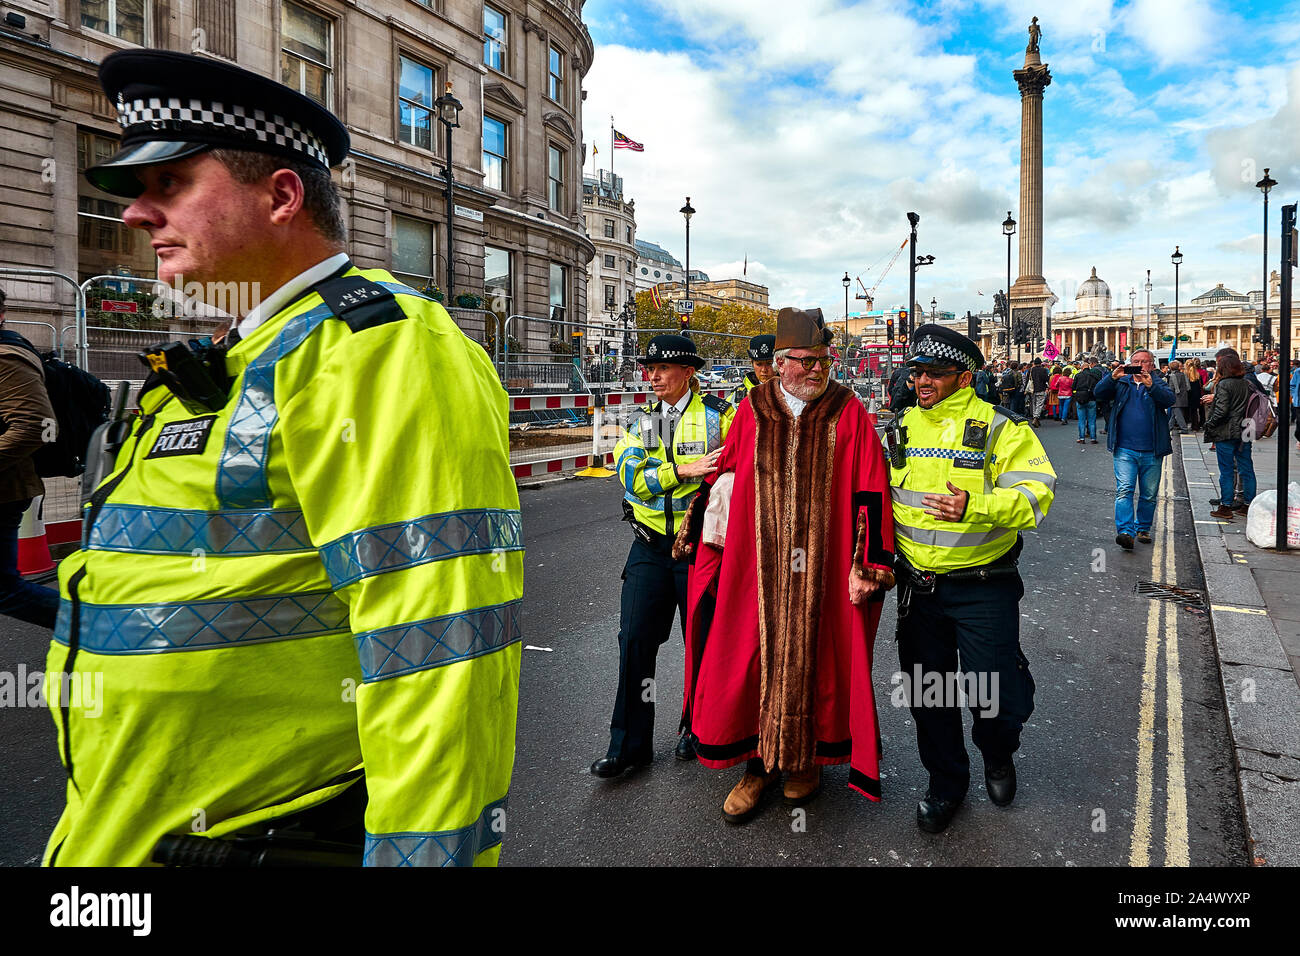 Londres, Reino Unido - 16 Oct, 2019: Woodbridge alcalde y miembro del Partido Verde Eamonn O'Nolan, vestidos con ropas civiles, está dirigida por la policía después de ser arrestado por el bloqueo de una carretera en Trafalgar Square. Foto de stock